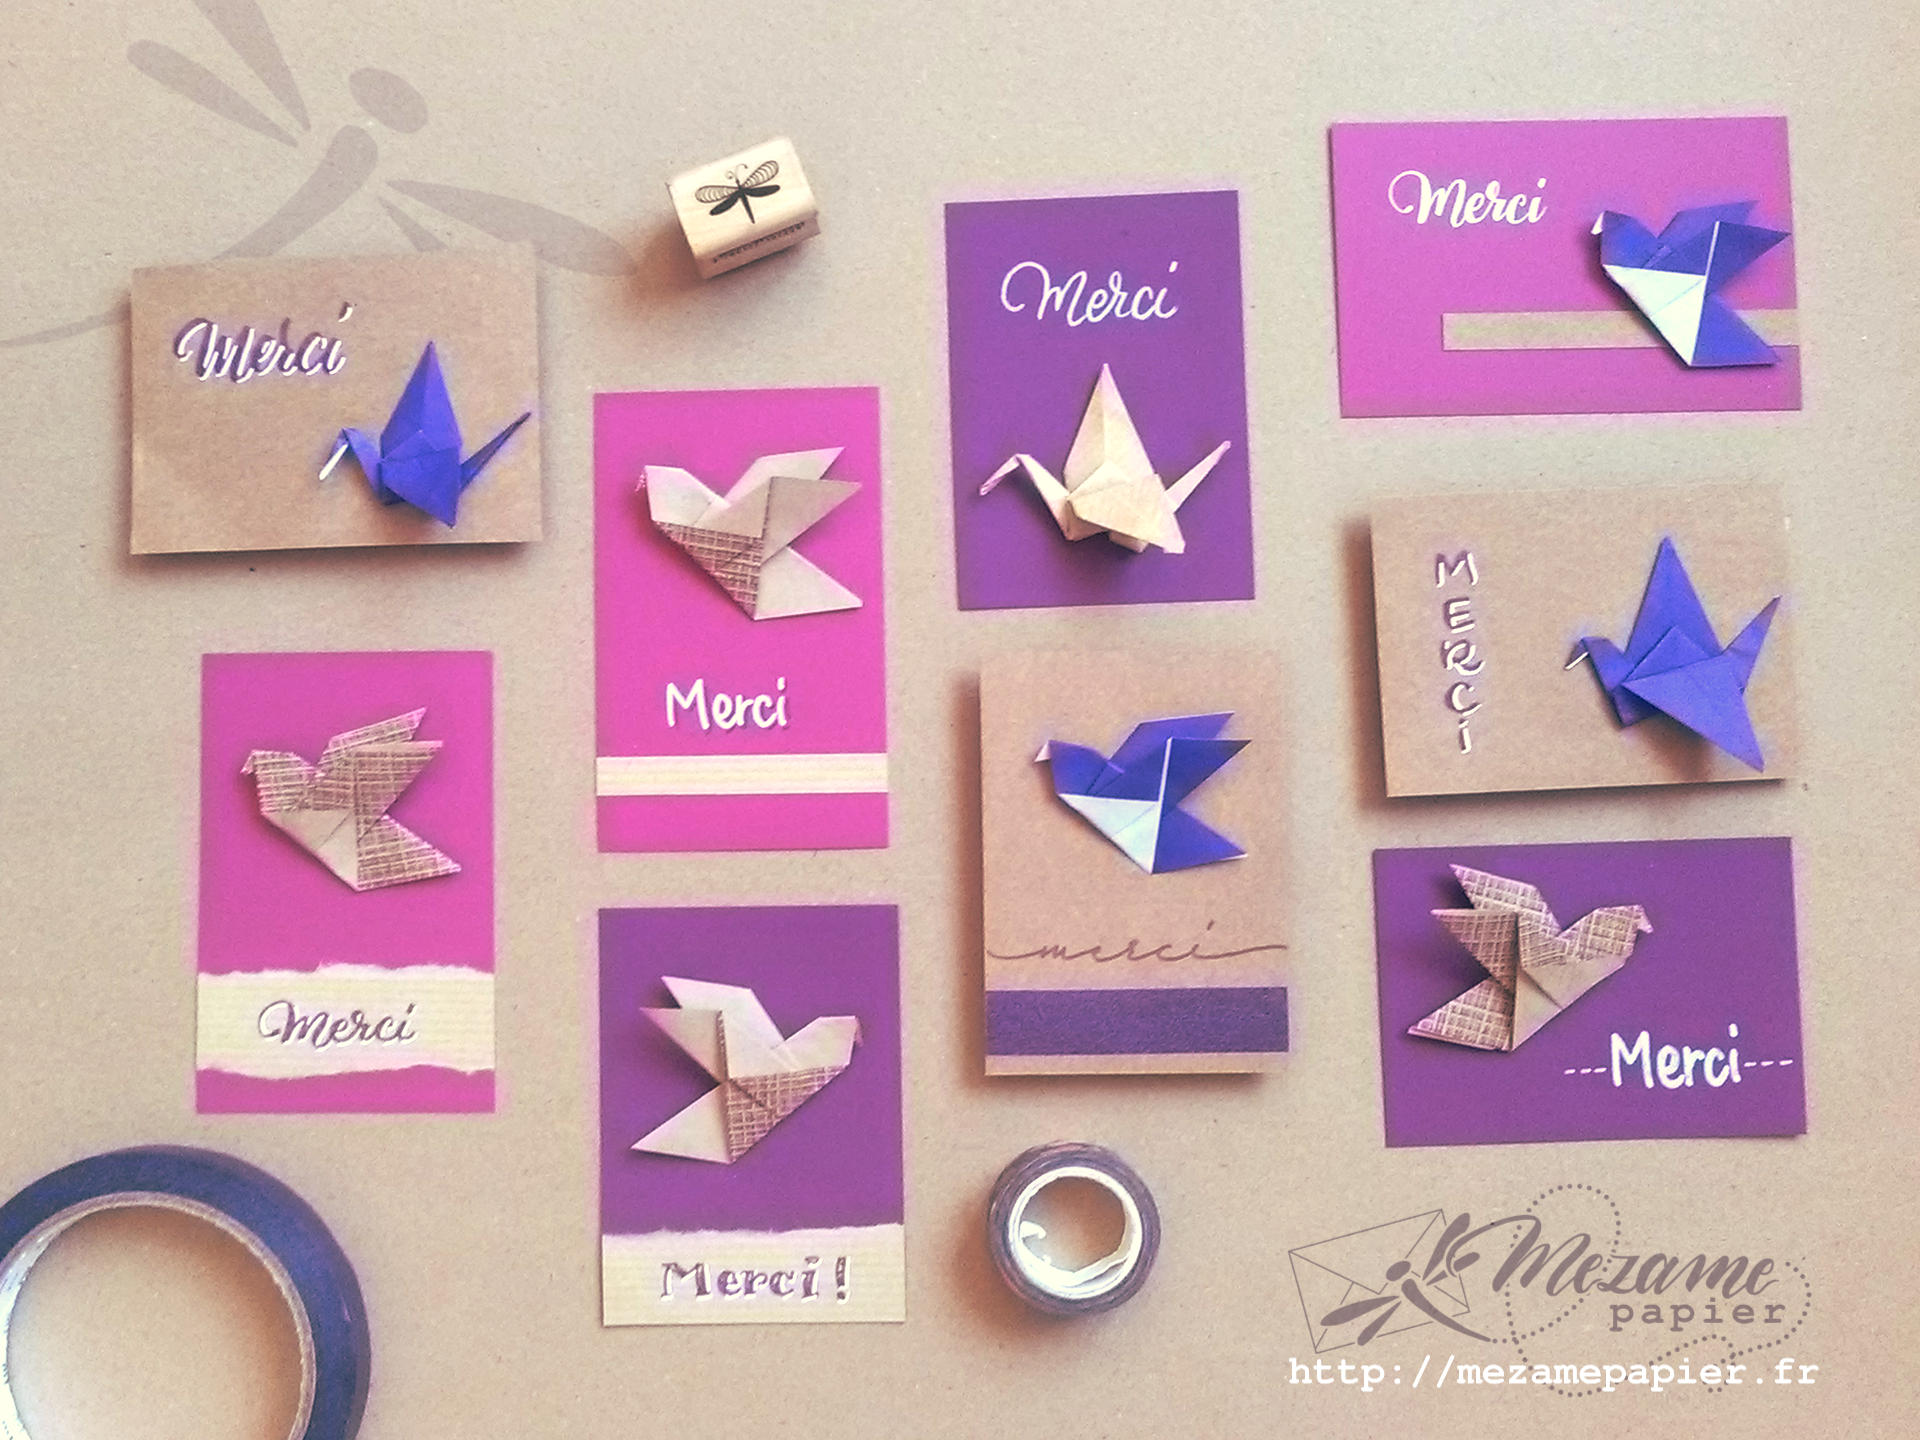 Assortiment de cartes 7 x 10 cm en papier violet et fuschia, avec un oiseau origami et le mot MERCi écrit à la main dans des tons complémentaires